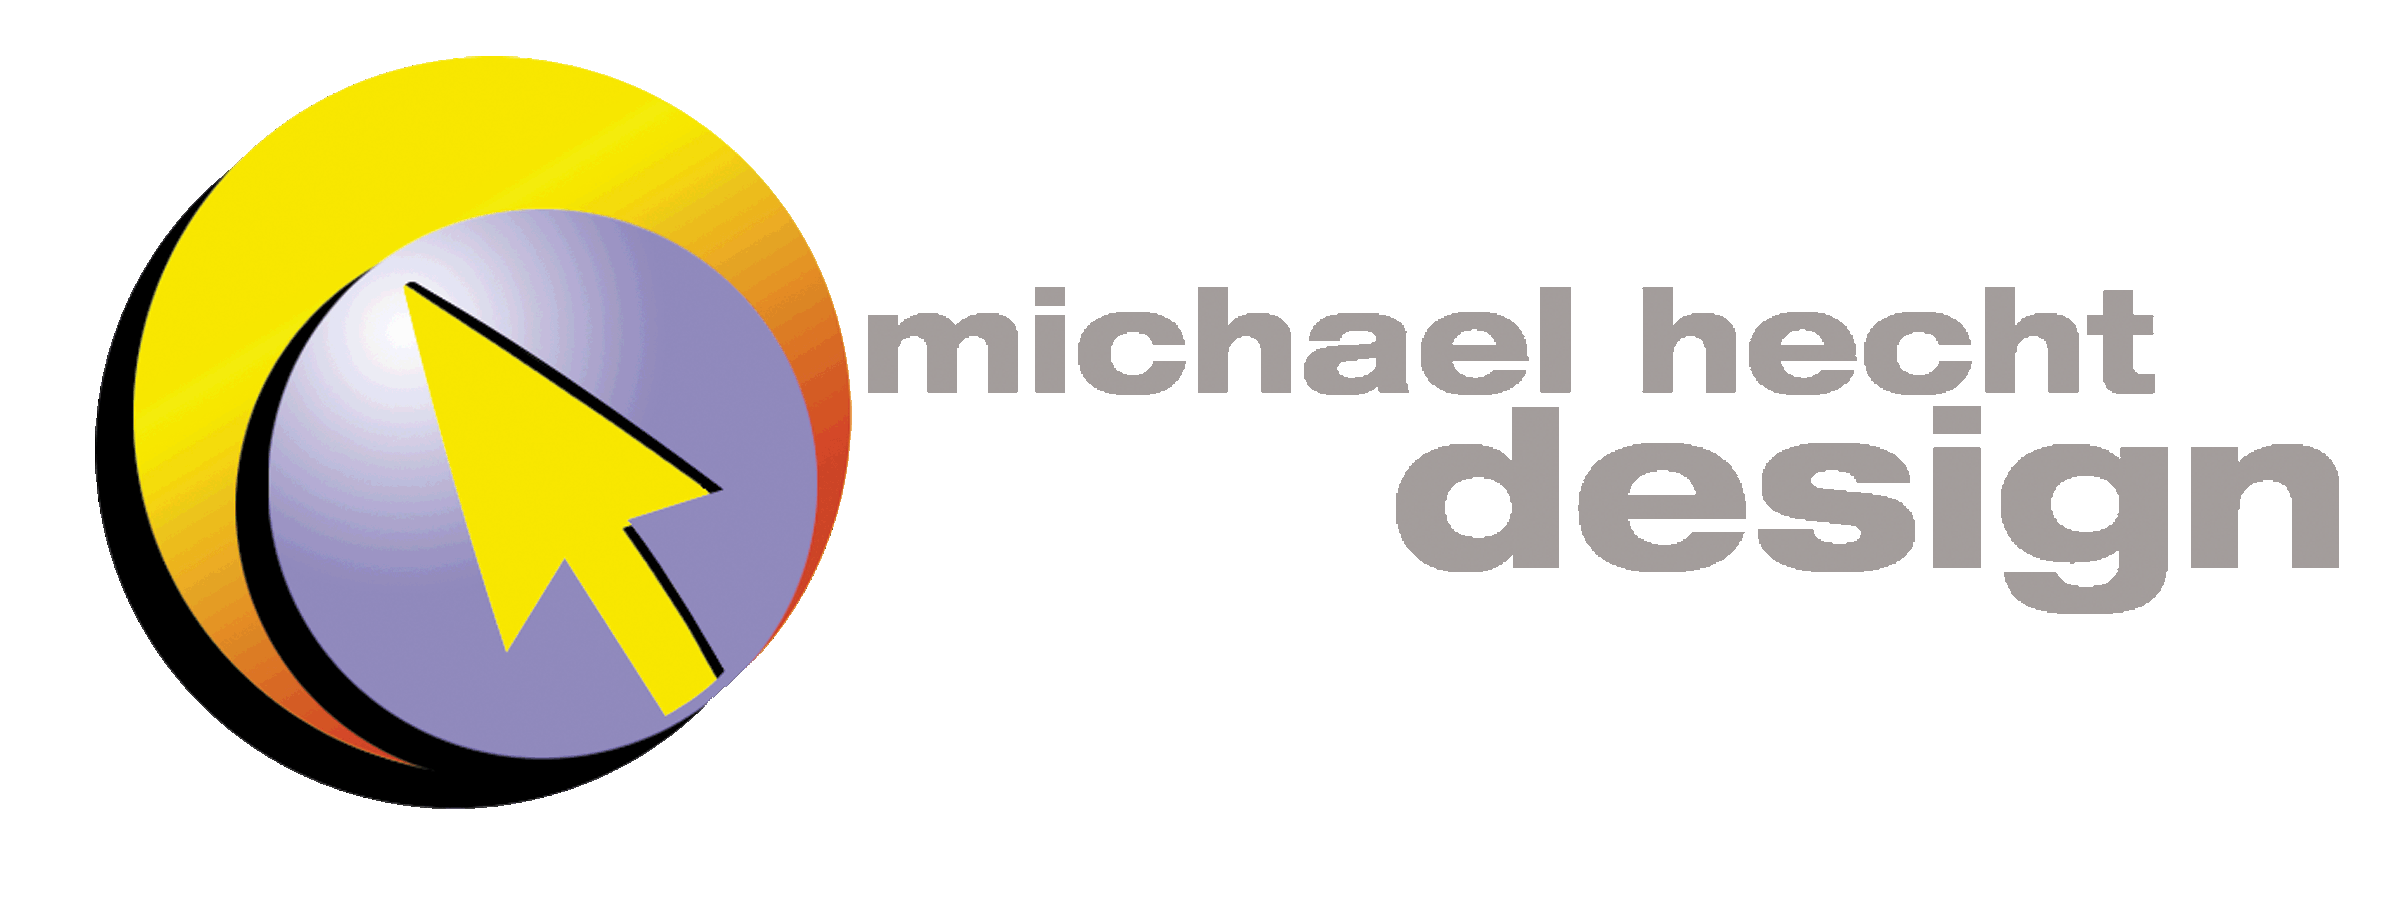 MICHAEL HECHT DESIGN